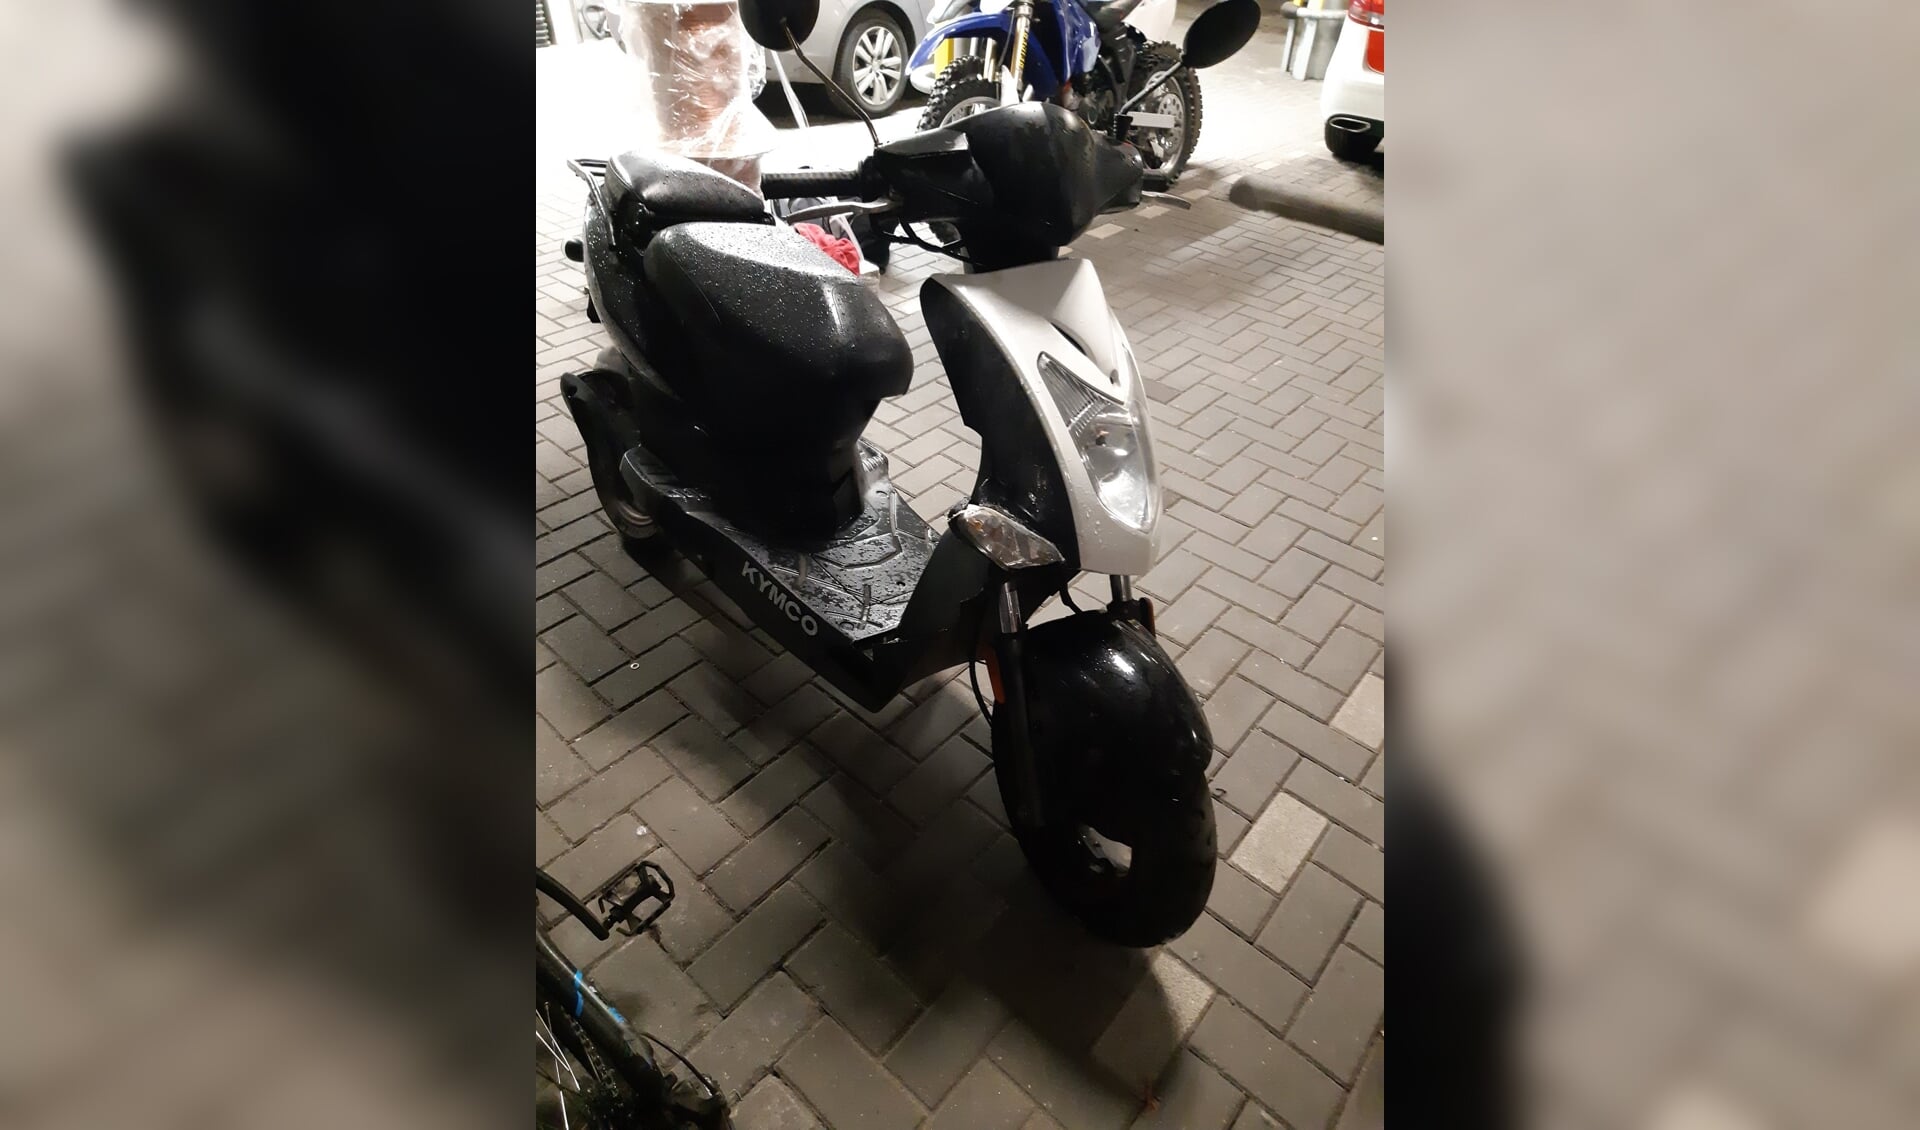 De politie heeft de gestolen scooter meegenomen naar het bureau. 